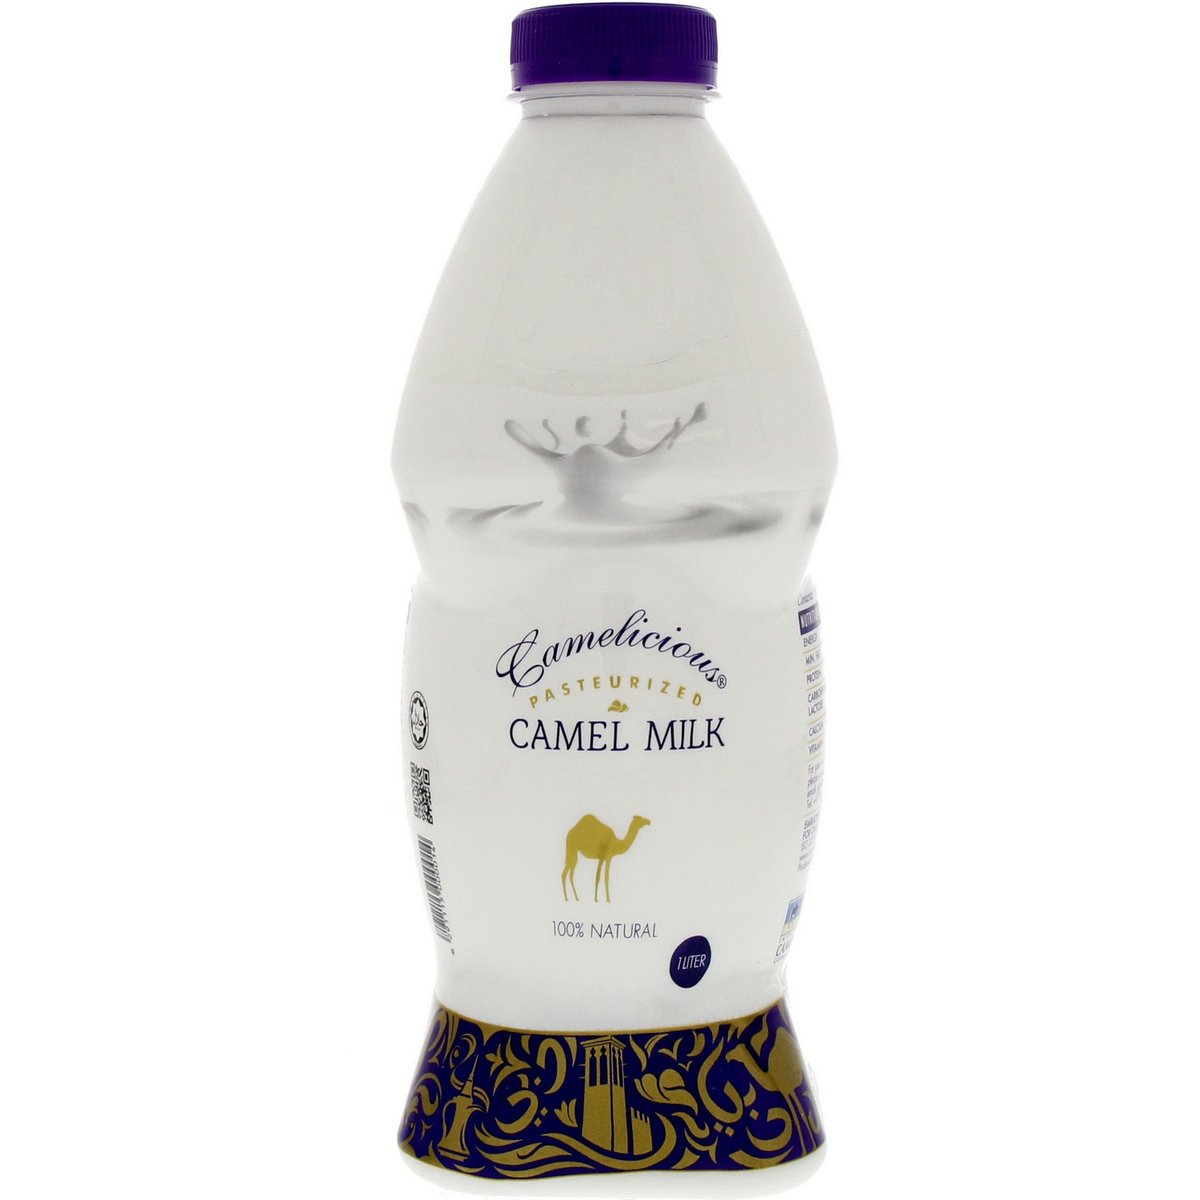 Camelicious Camel Milk 1 Litre